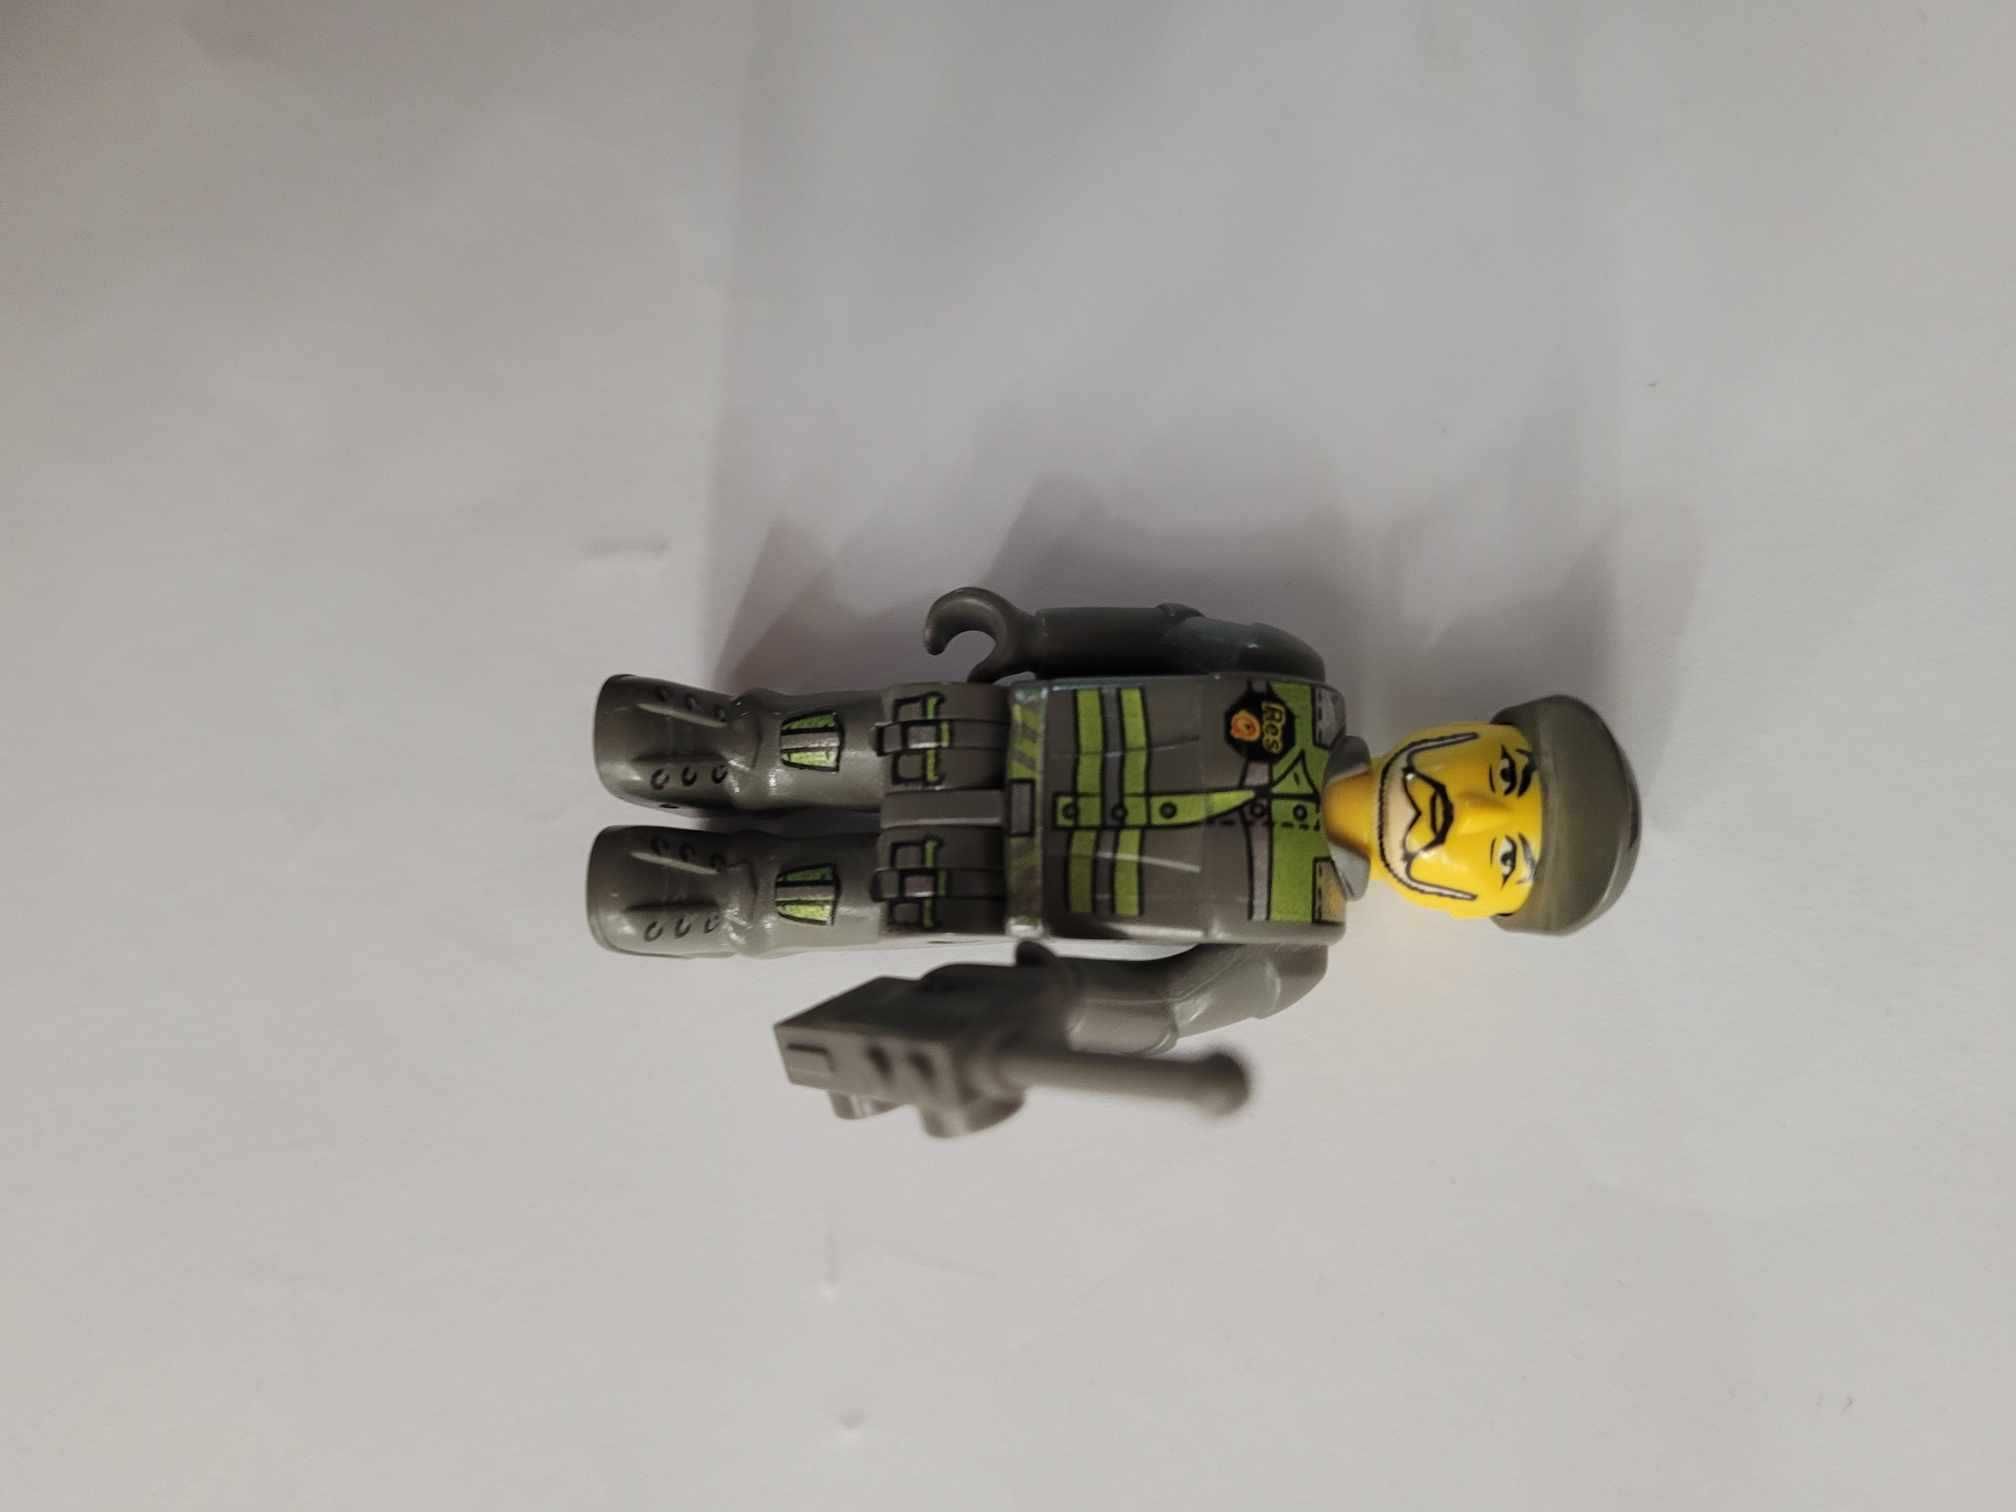 Lego 4603 Res-Q Wrecker Jackstone